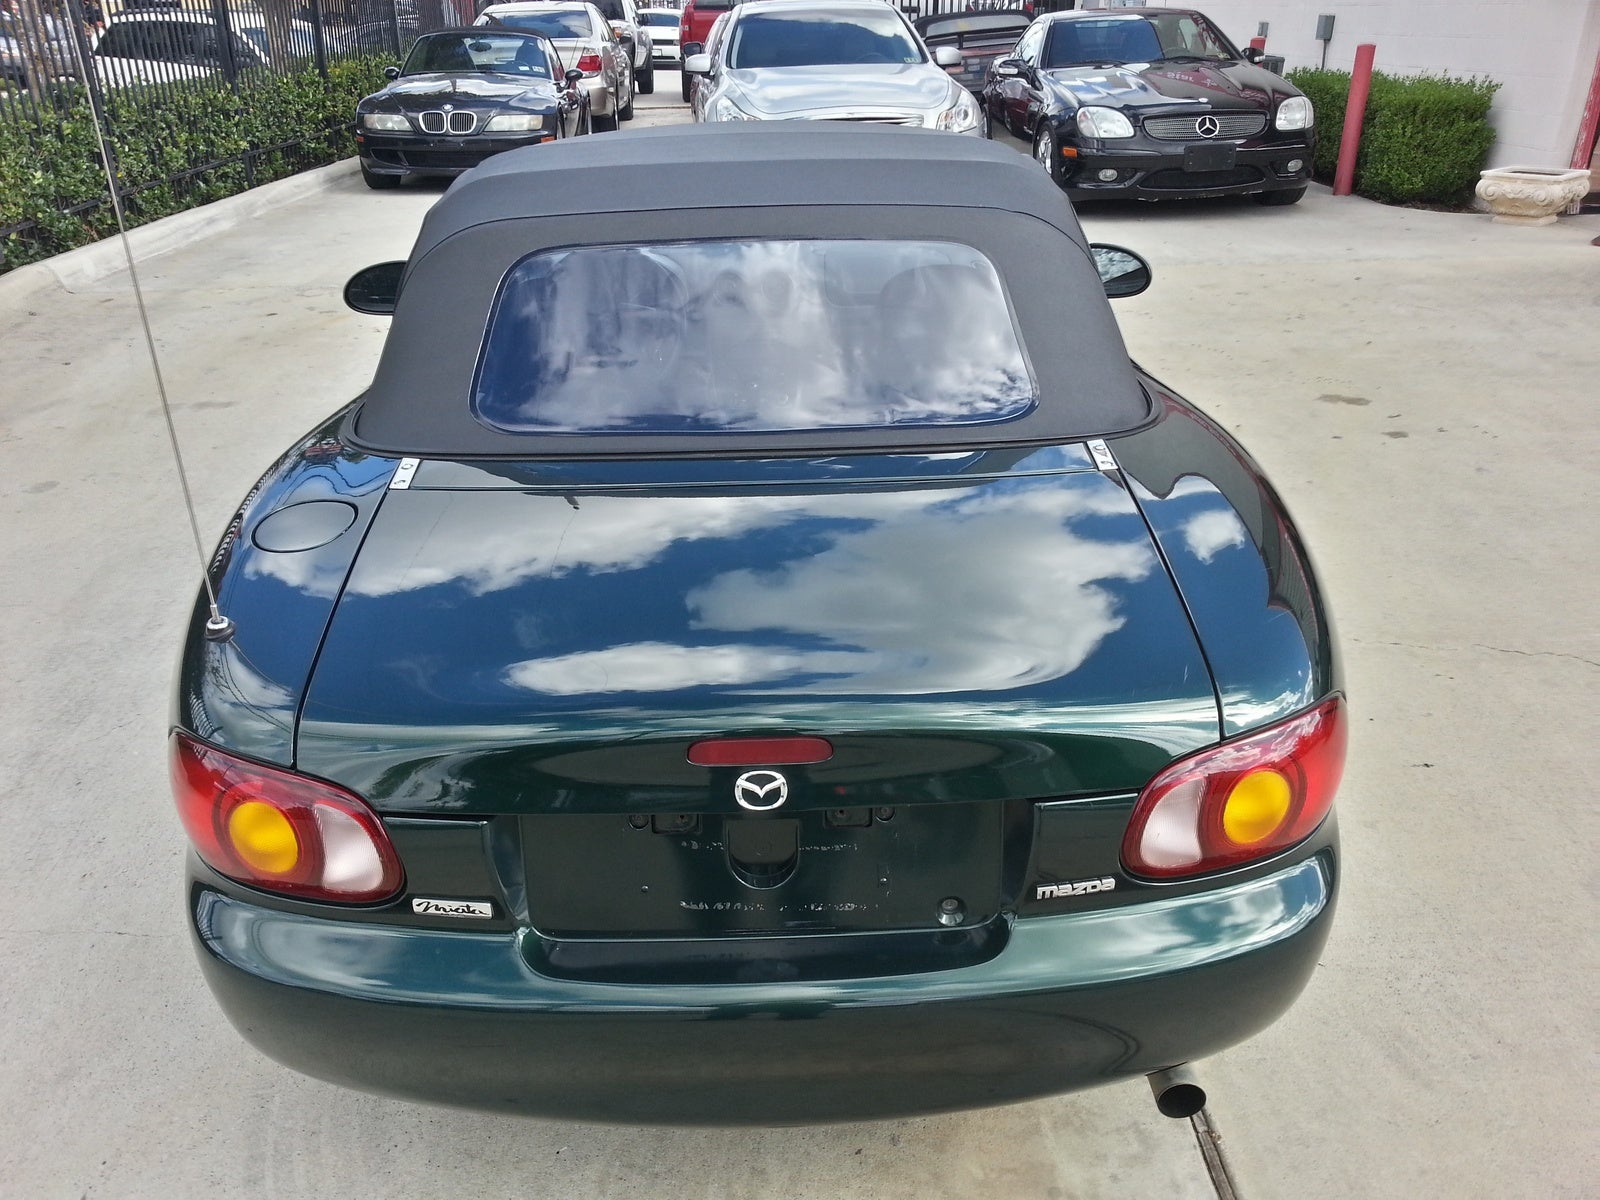 1999 Mazda MX-5 Miata - Overview - CarGurus